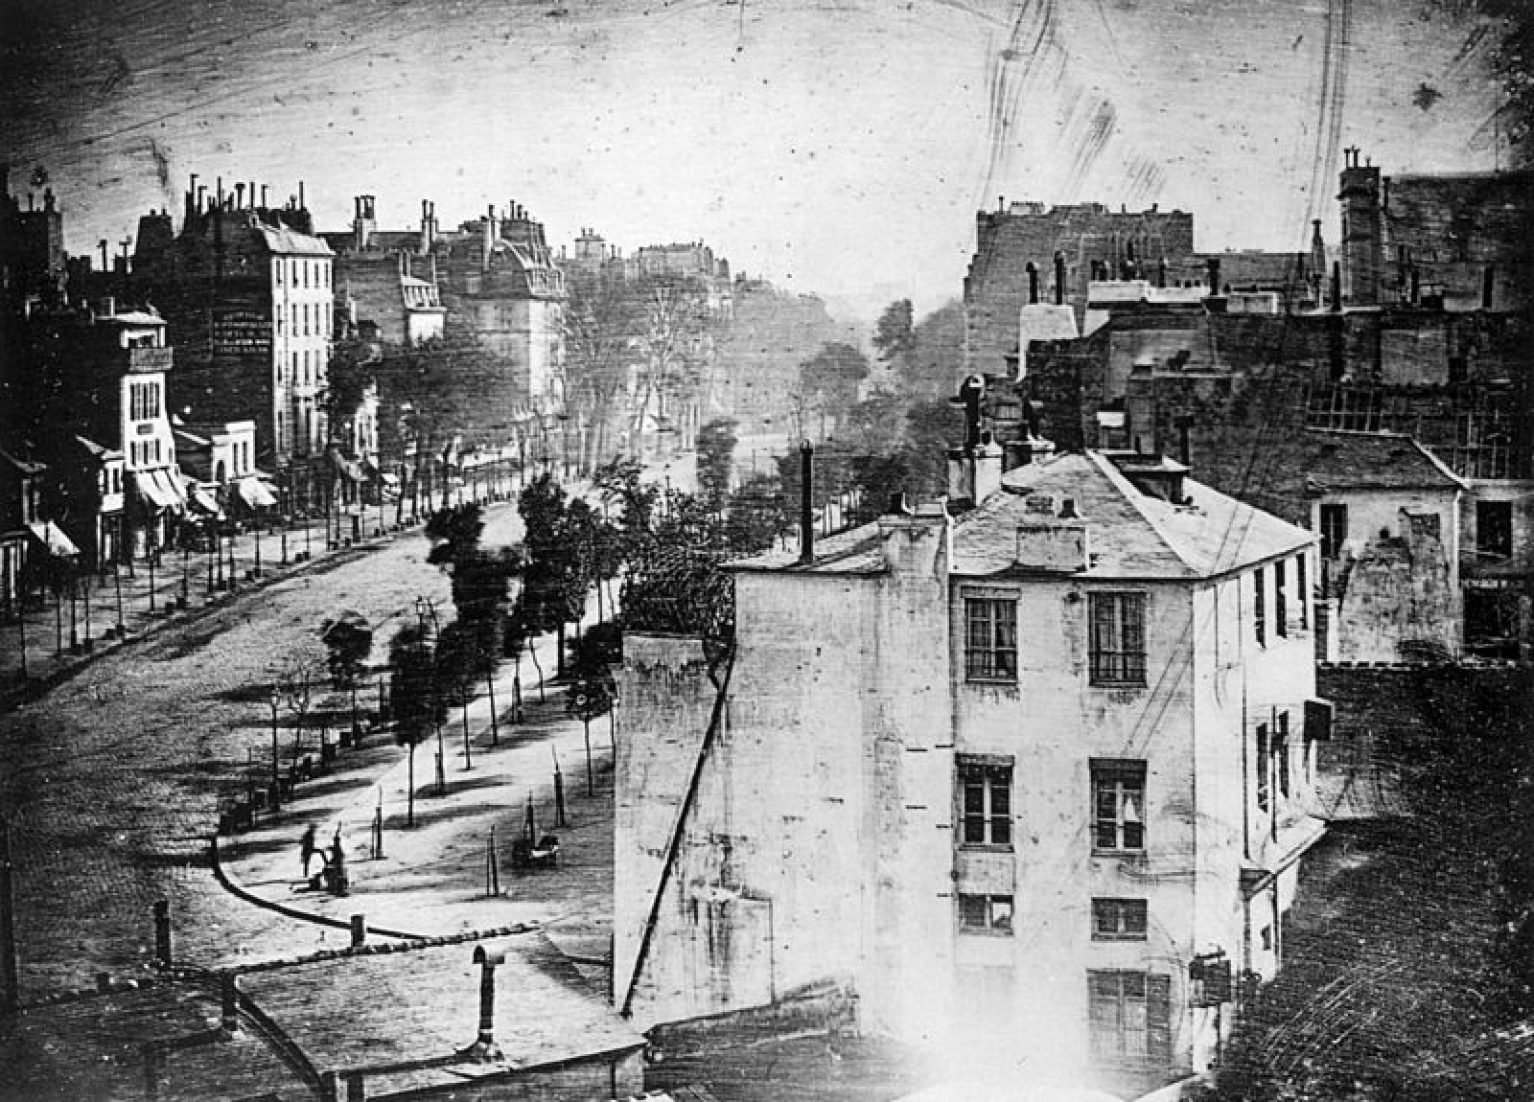 Daguerreotype taken by Daguerre, 1838